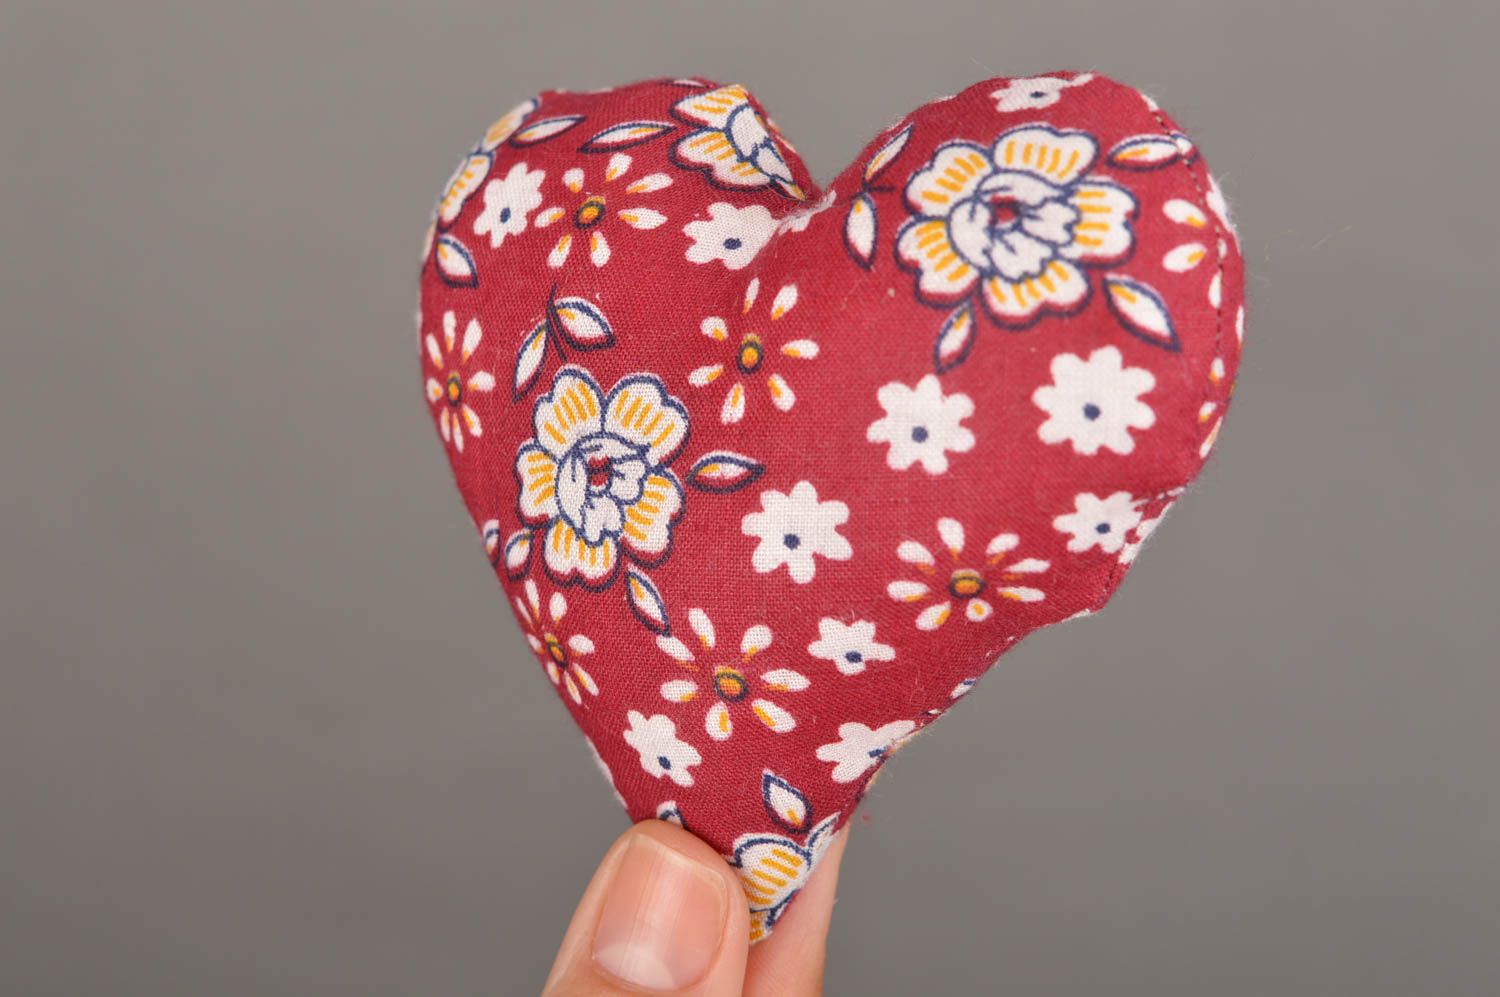 Handmade Stoff Spielzeug Herz aus Stoff in Rot und Weiß für Haus Interieur  foto 5